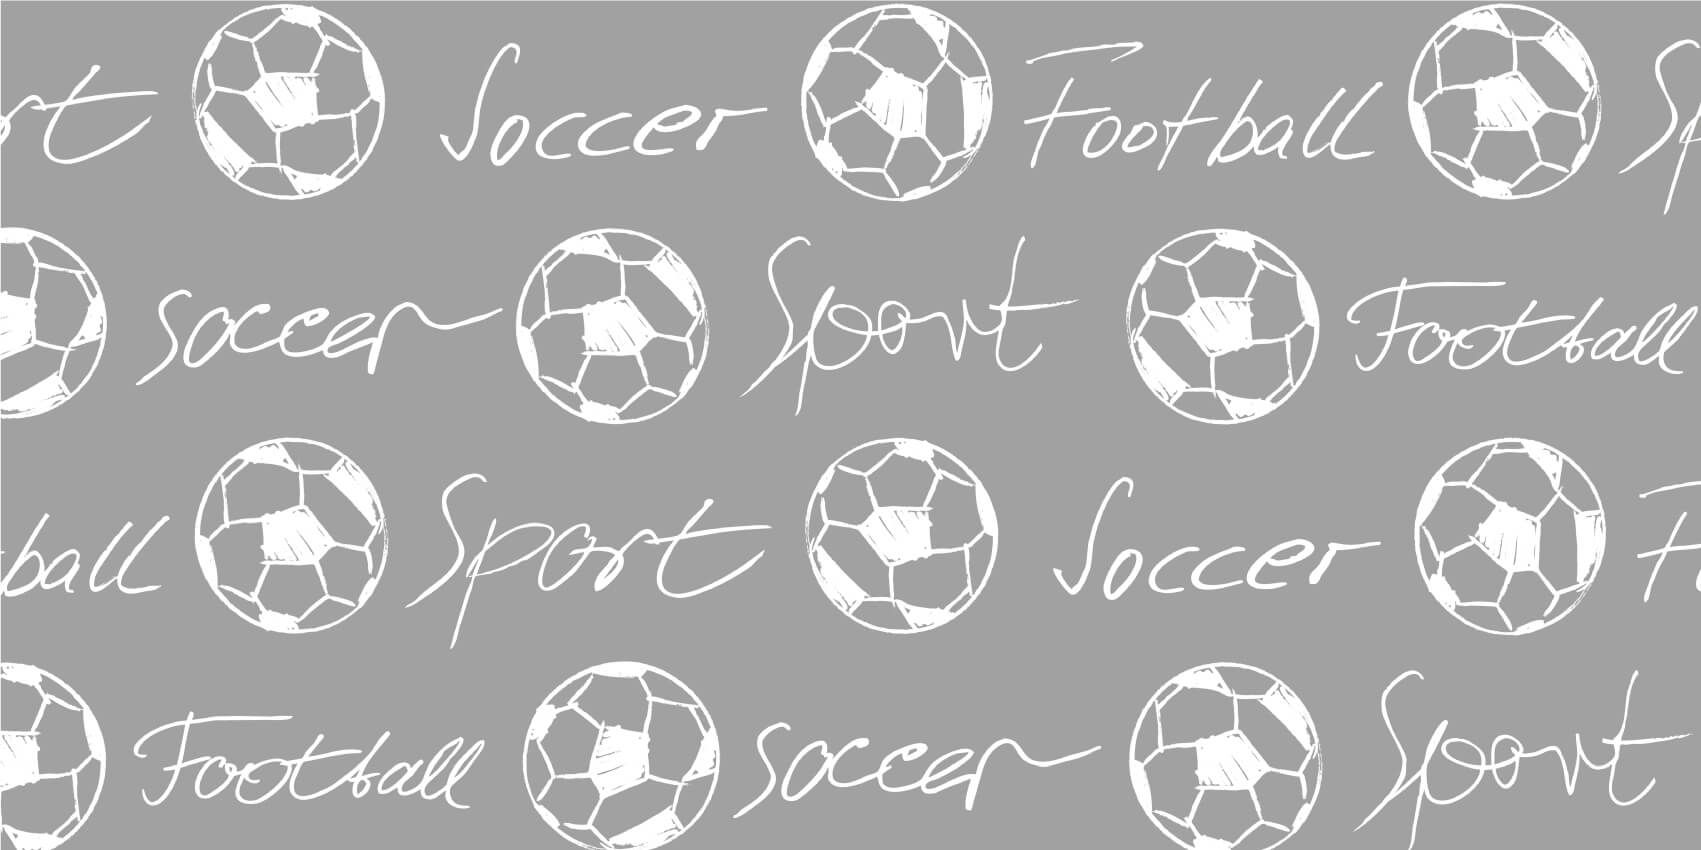 Papier peint de football - Ballons de football et texte - Chambre des enfants